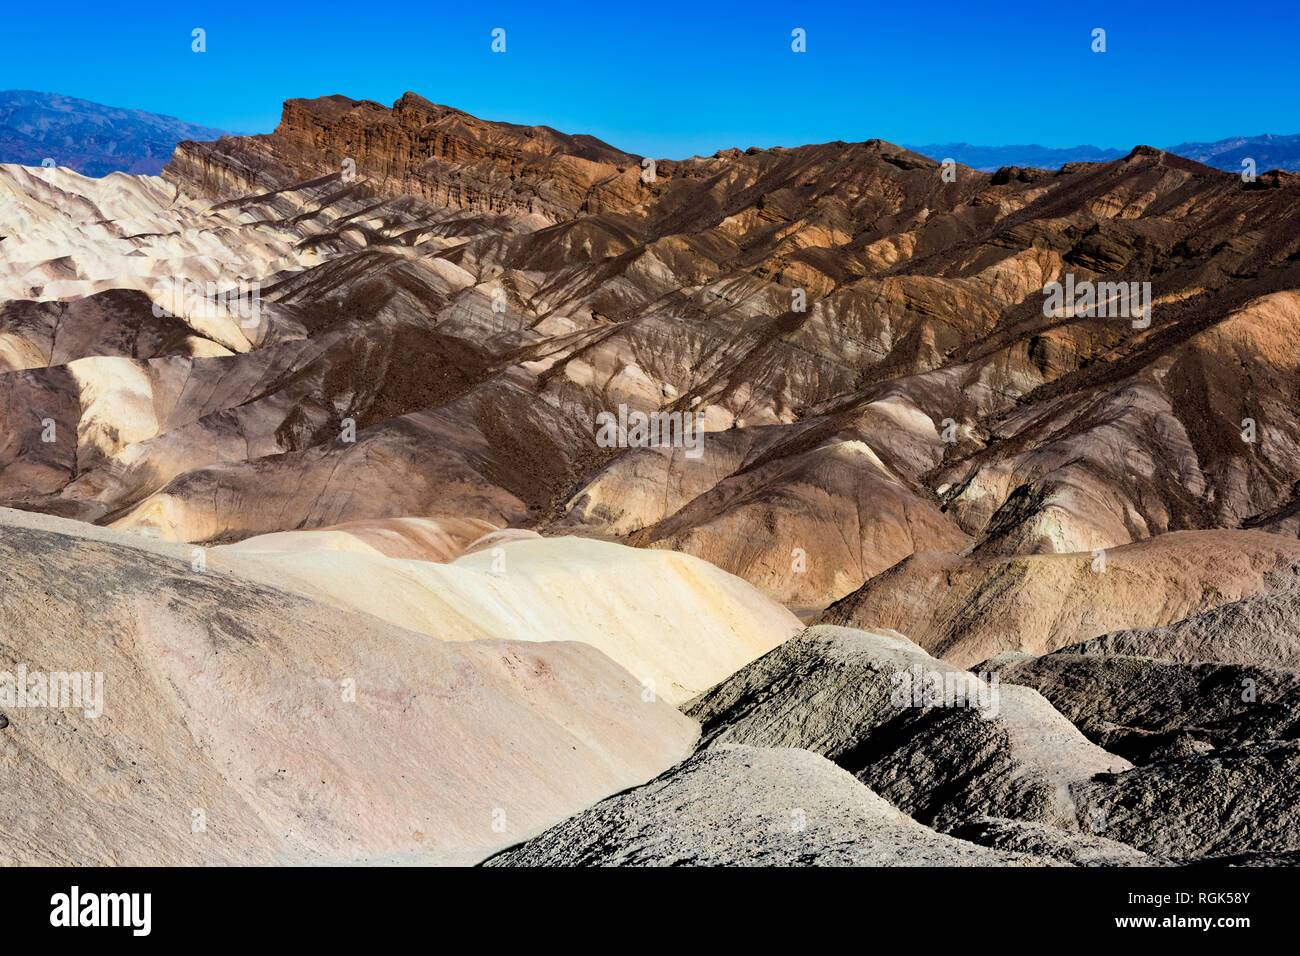 USA, californien, la vallée de la mort, Death Valley National Park, Zabriskie Point Banque D'Images